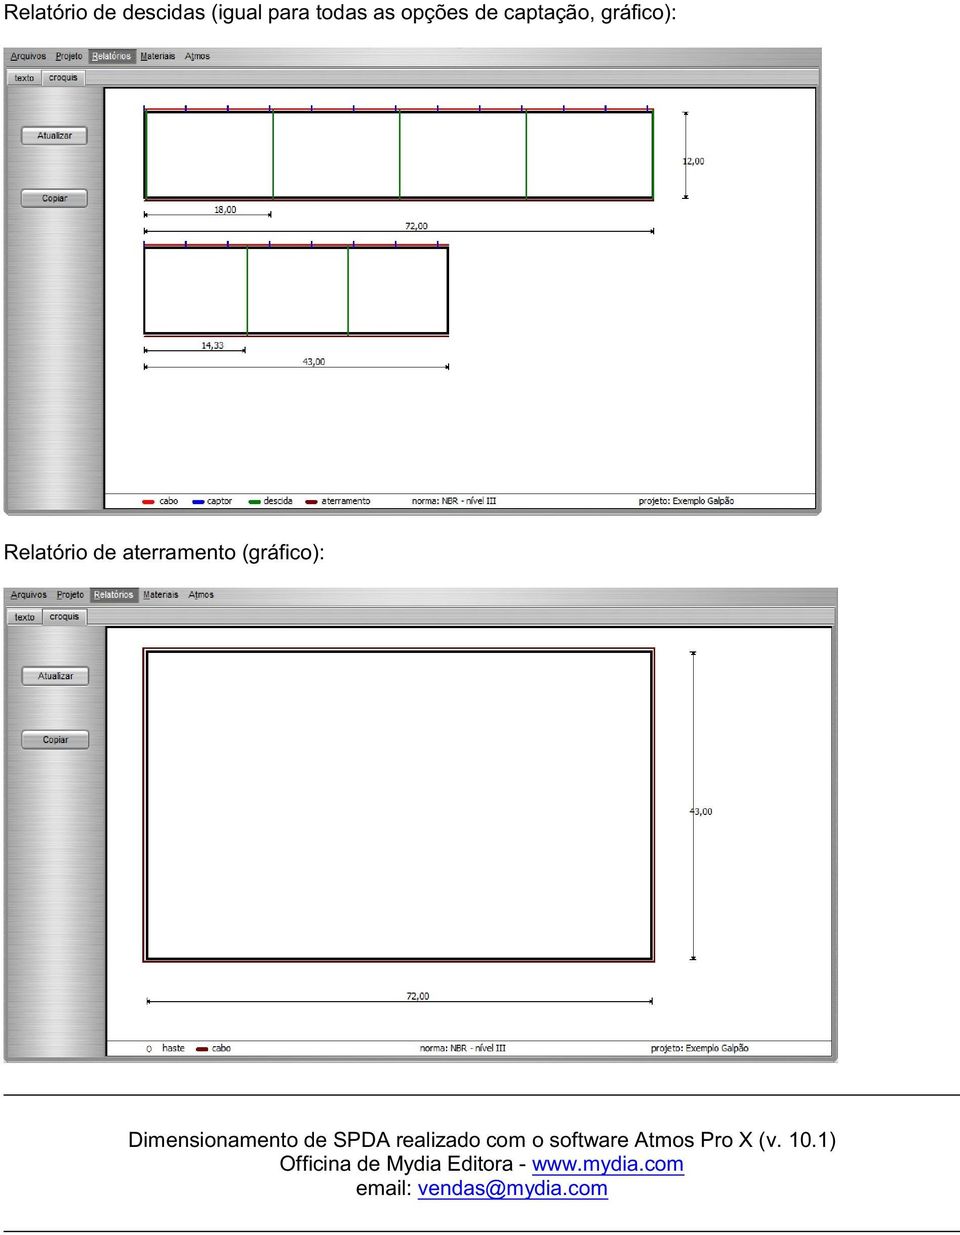 Dimensionamento de SPDA realizado com o software Atmos Pro X